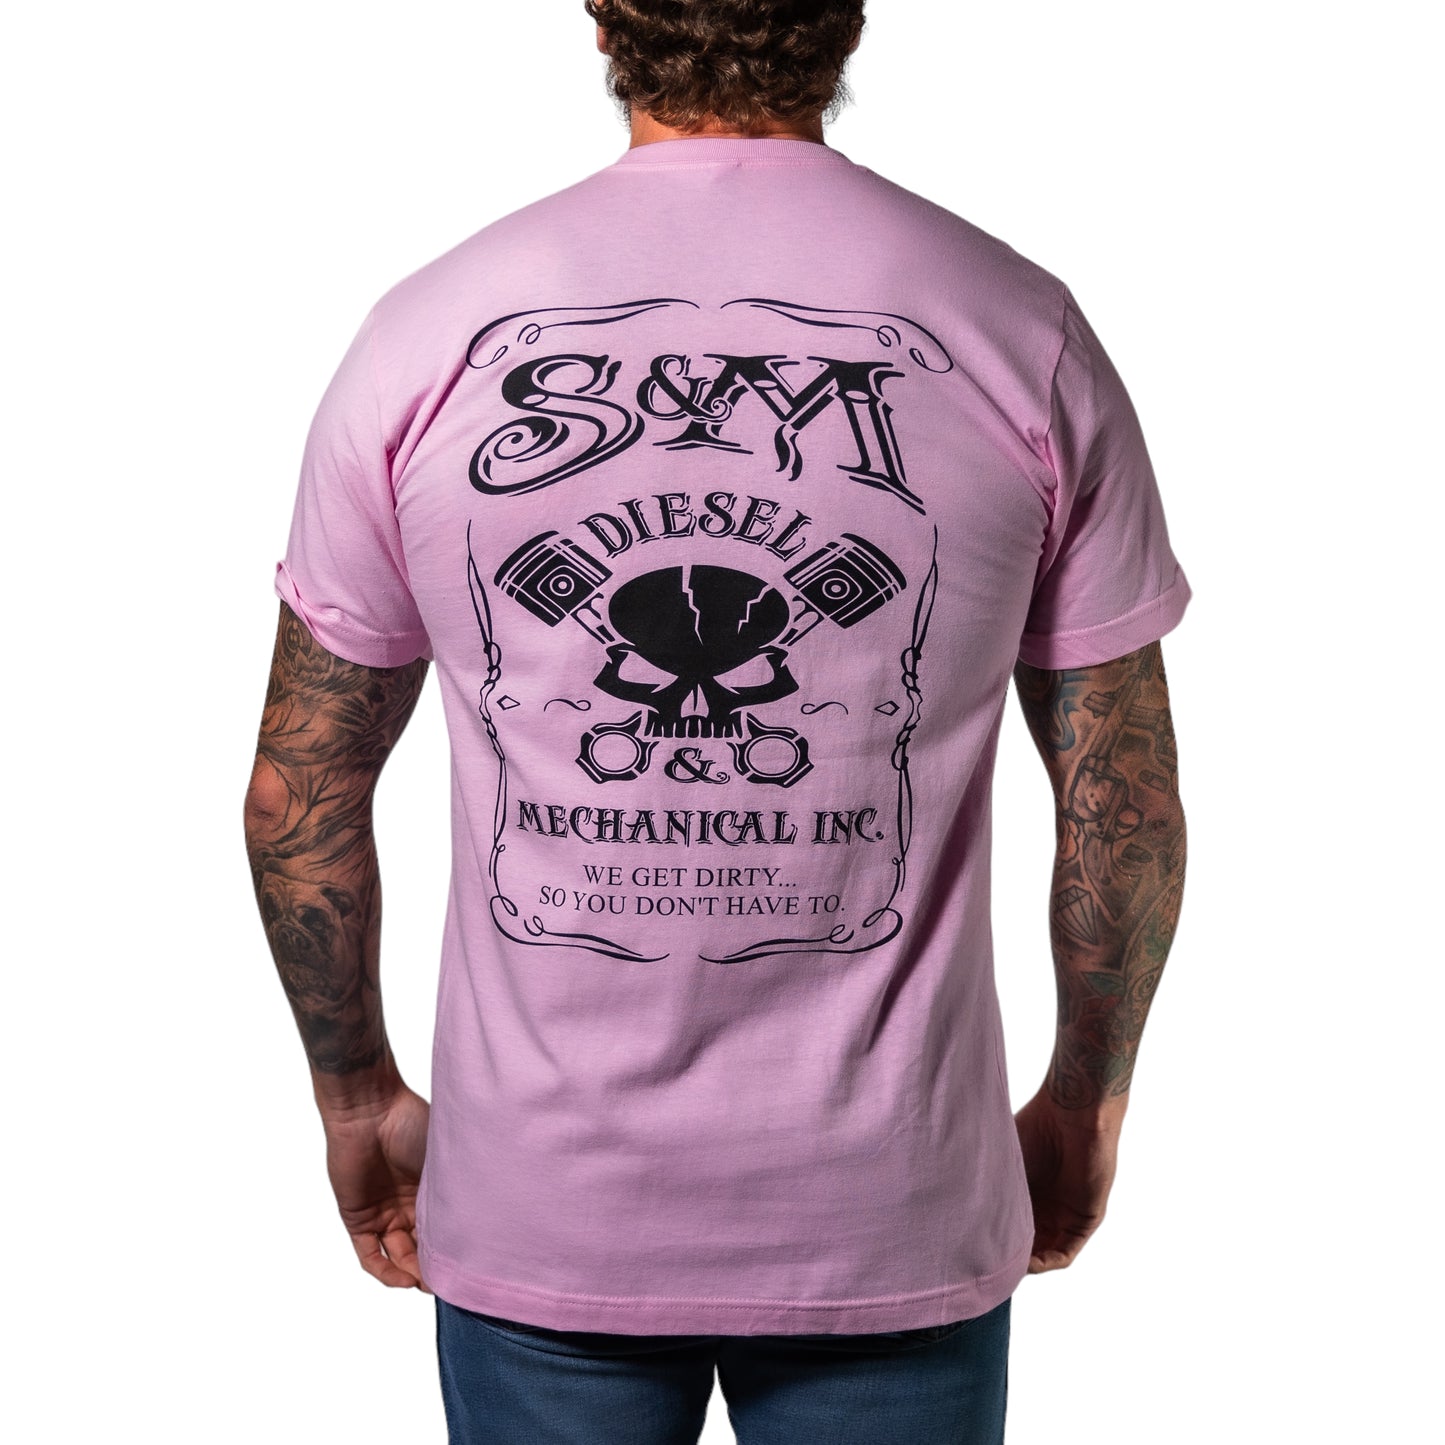 S&M Diesel short sleeve uni-sex t-shirt, Black logo - 10 color options avail